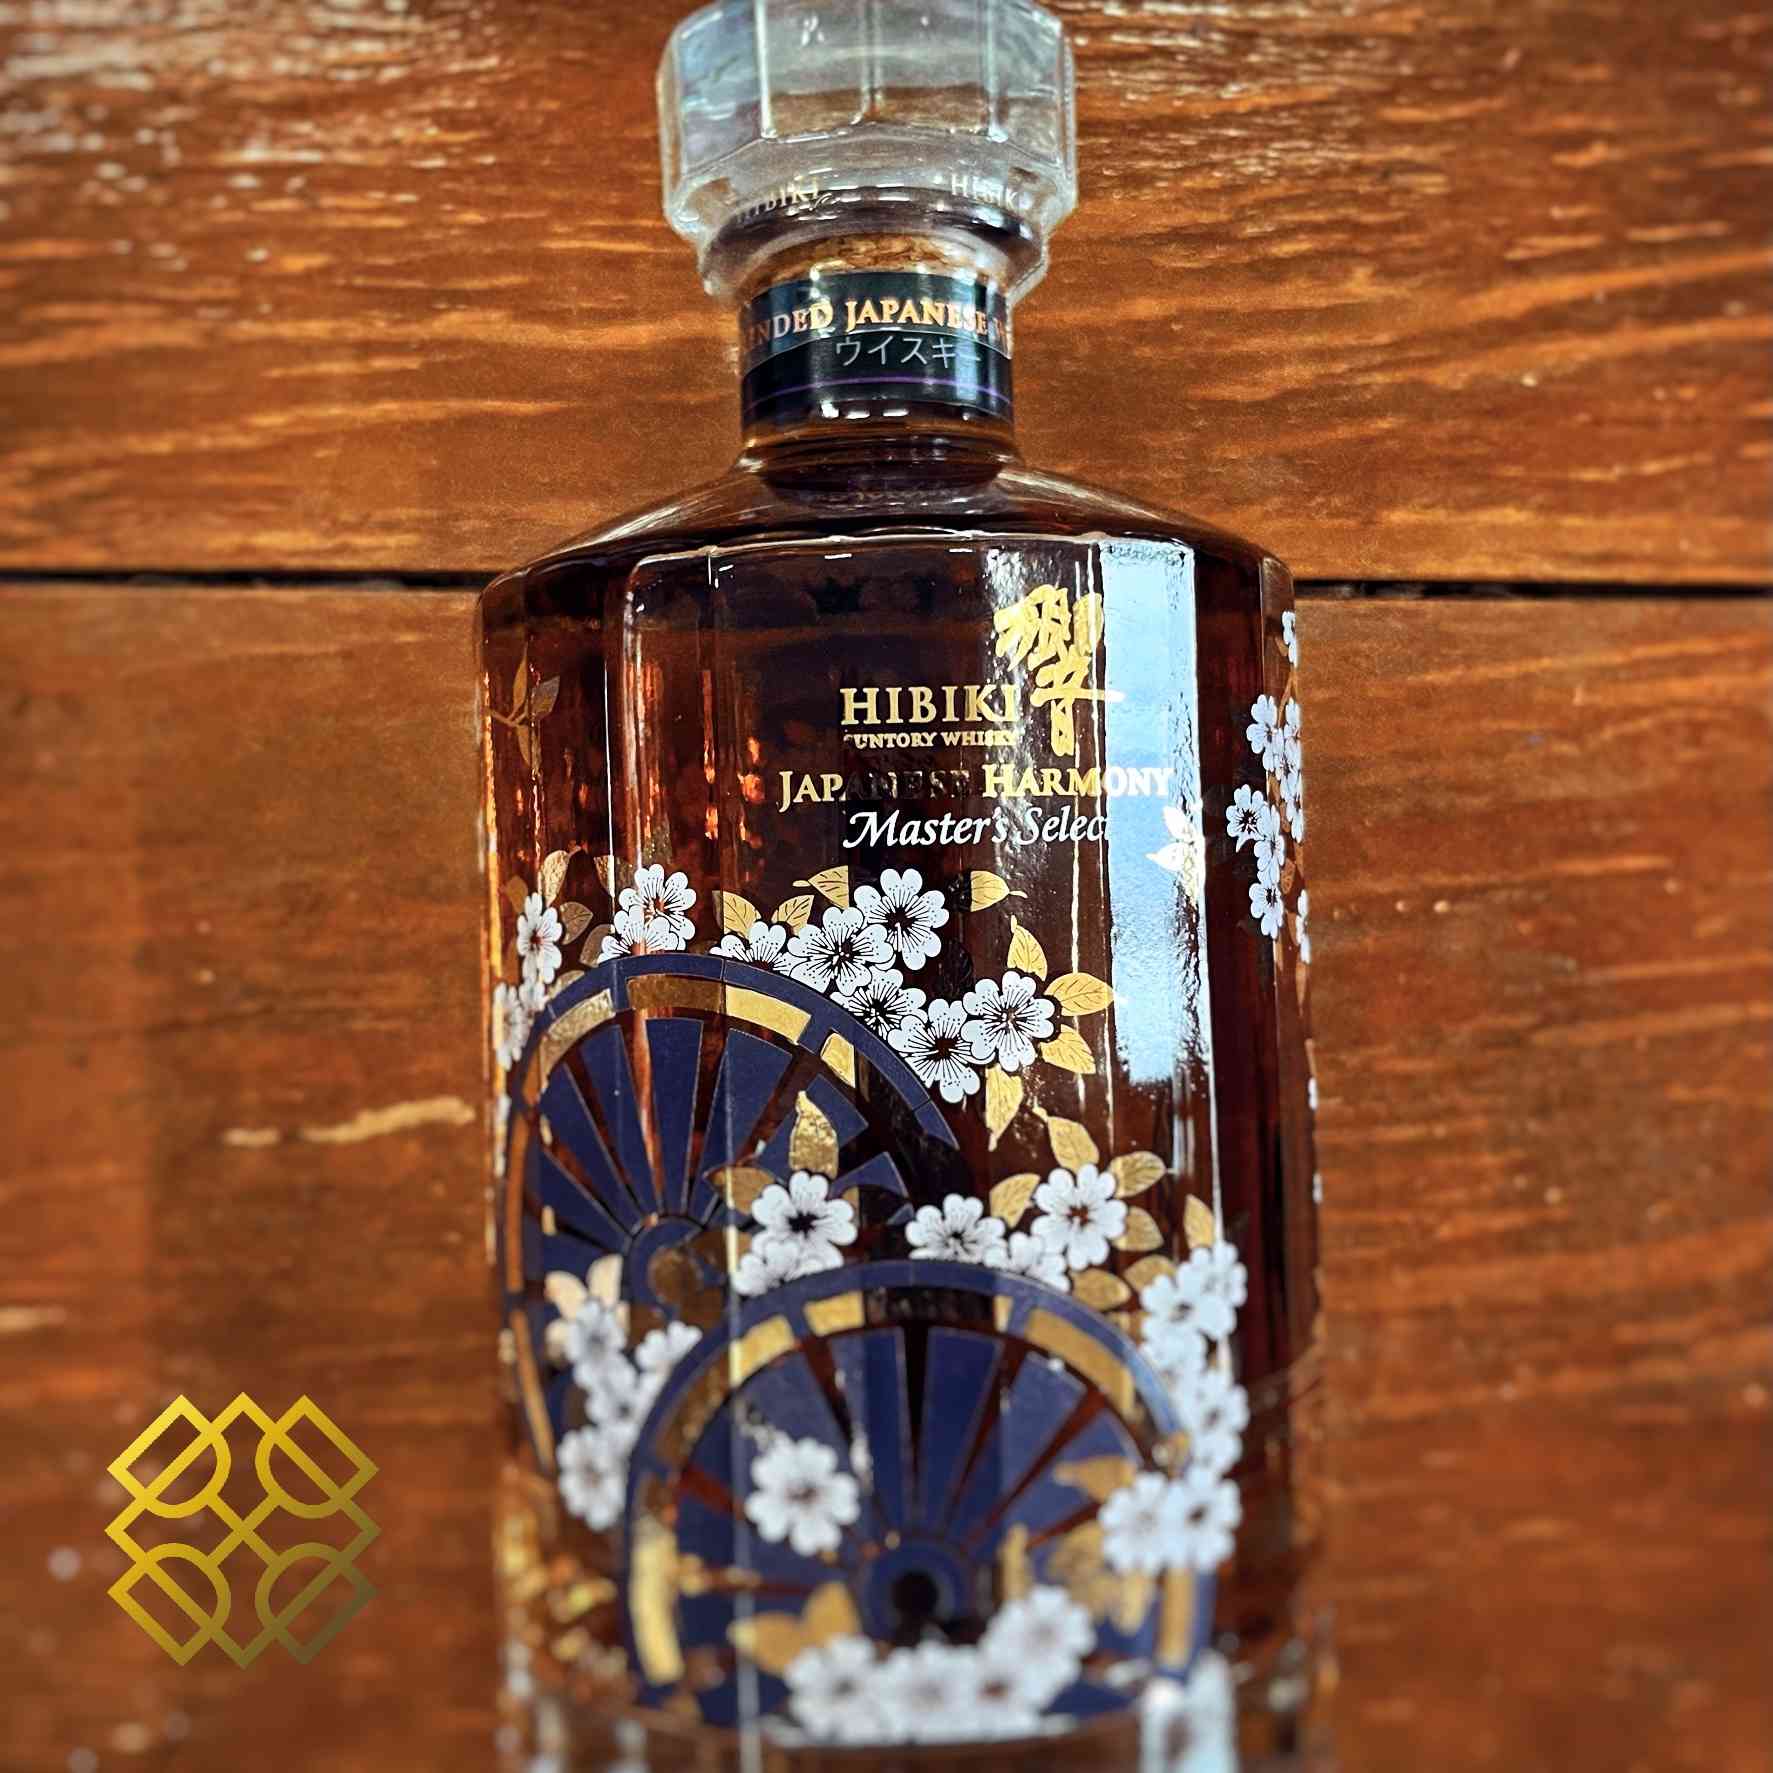 Hibiki - Master's select 2016, 43% - Japanese Whisky – Alcohol Please